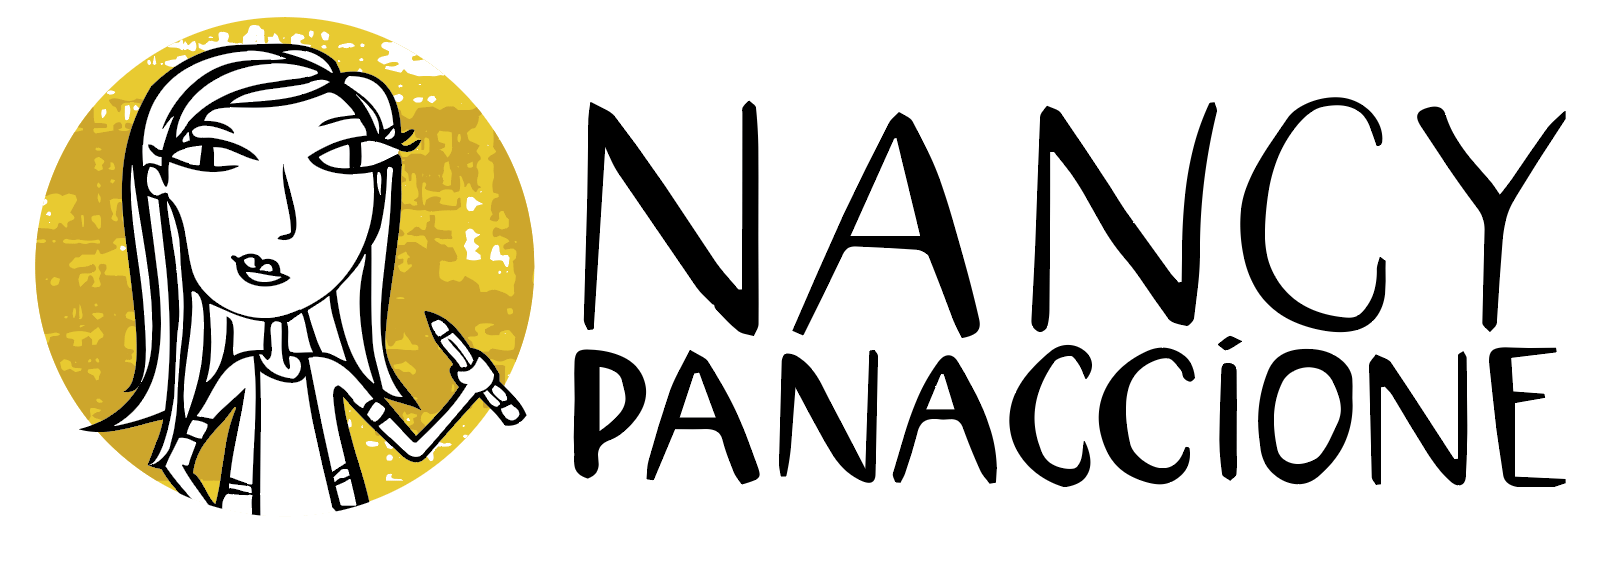 nancy panaccione